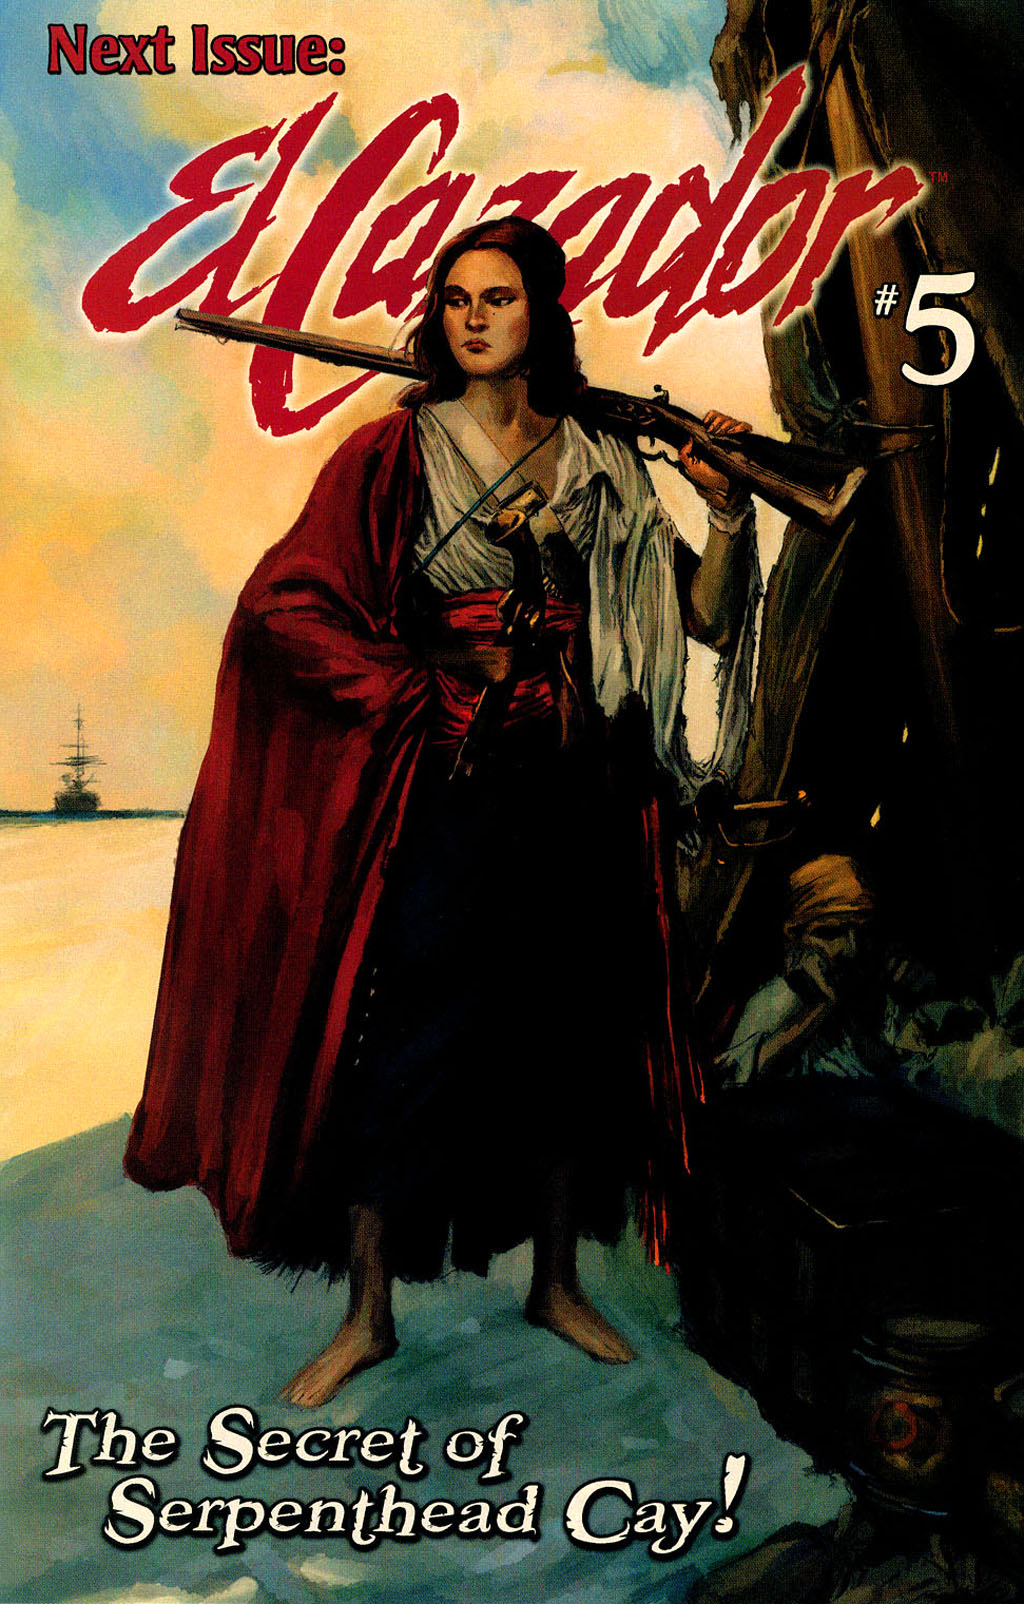 Read online El Cazador comic -  Issue #4 - 21